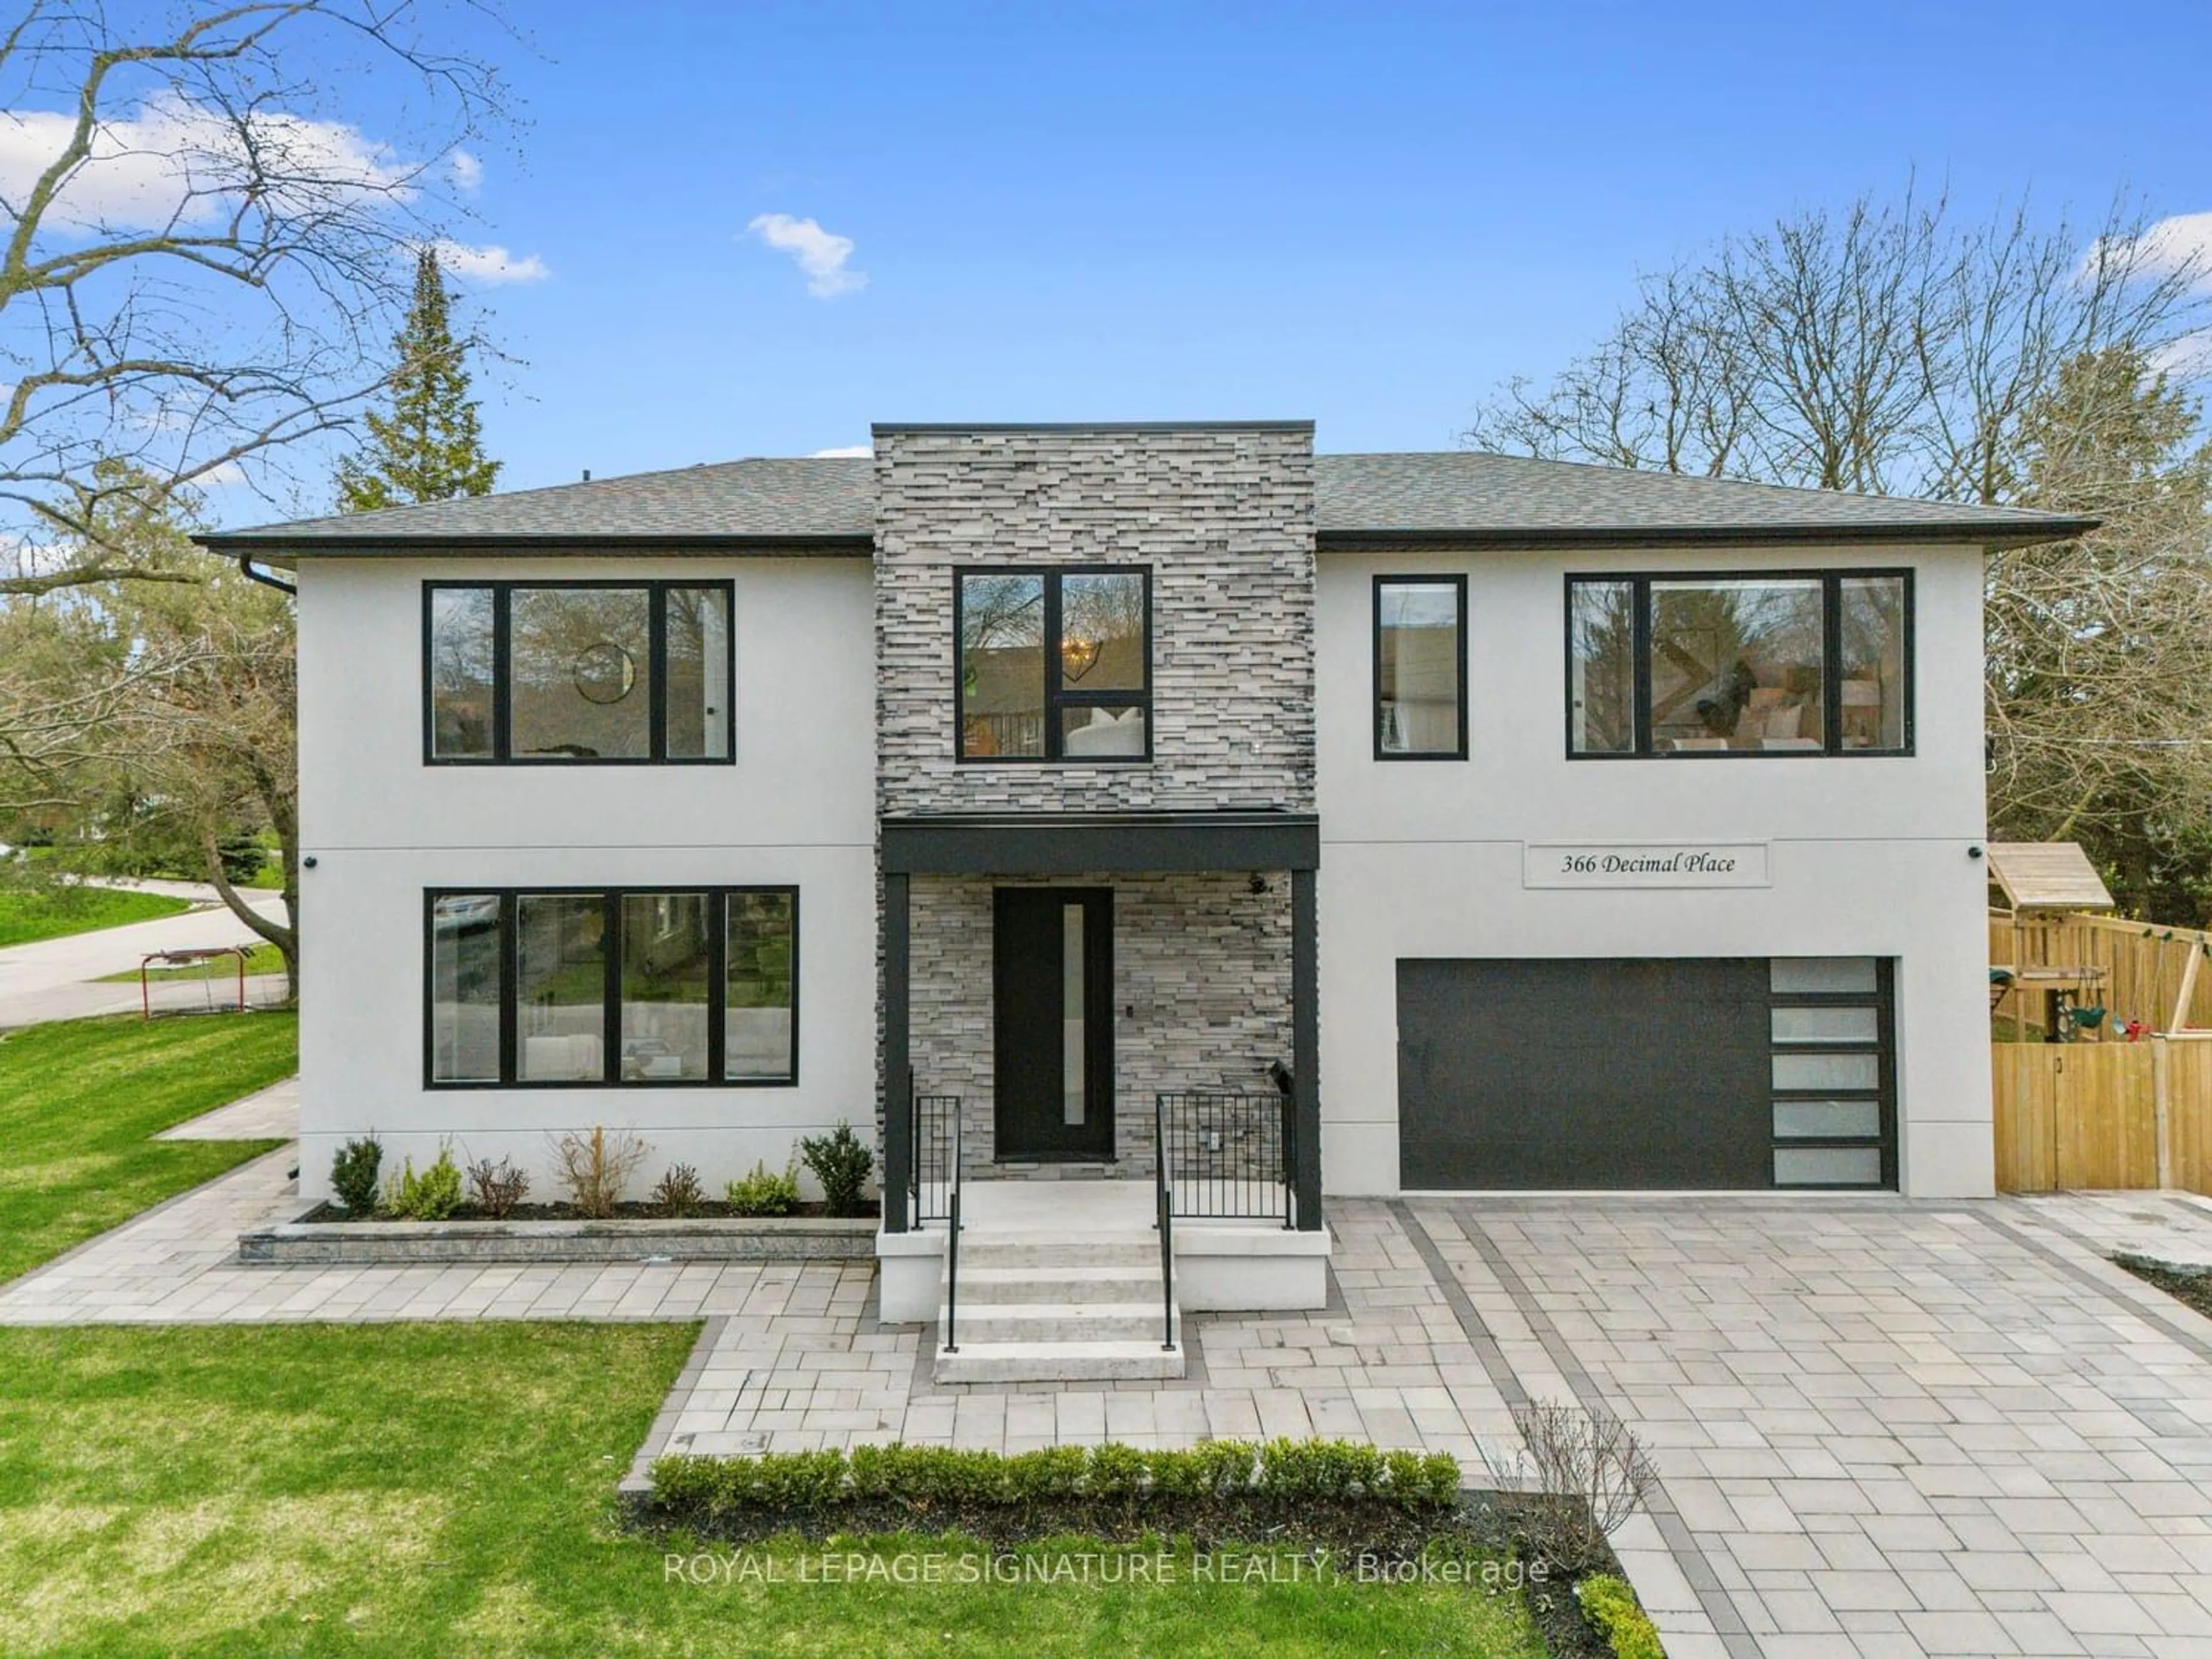 Home with brick exterior material for 366 Decimal Pl, Toronto Ontario M1C 2V9